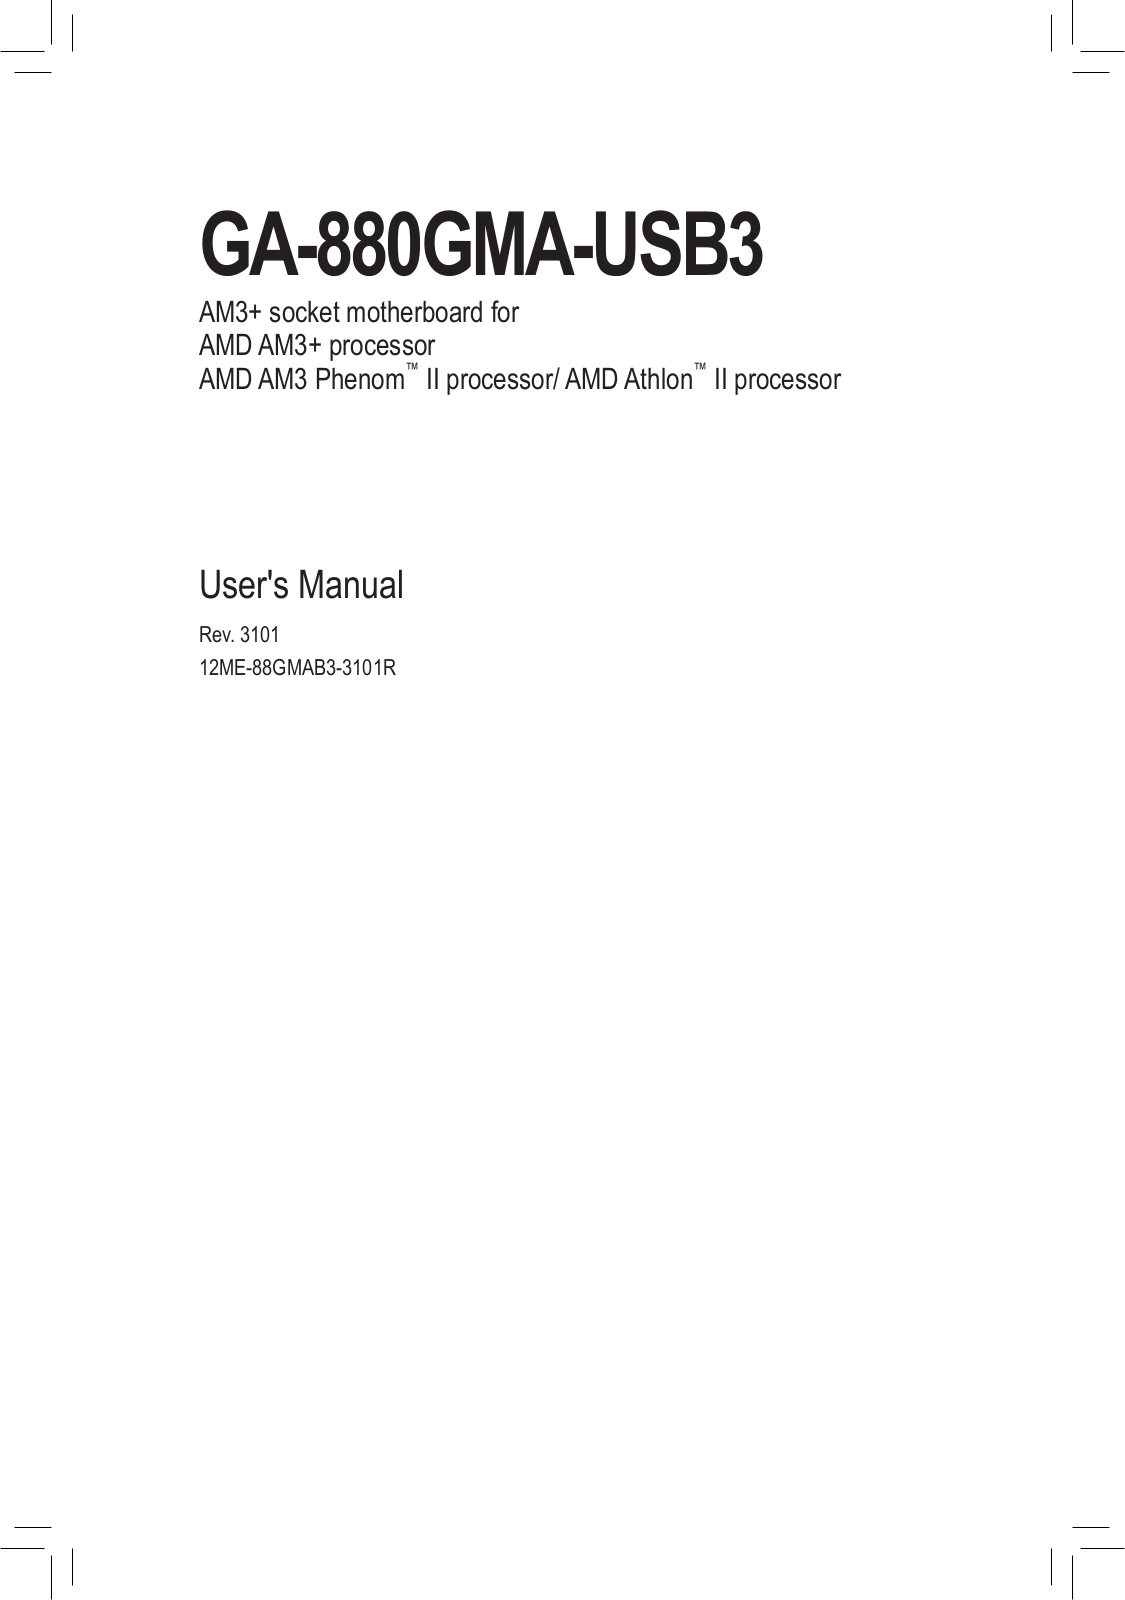 Gigabyte GA-880GMA-USB3 (rev. 3.1) User Manual